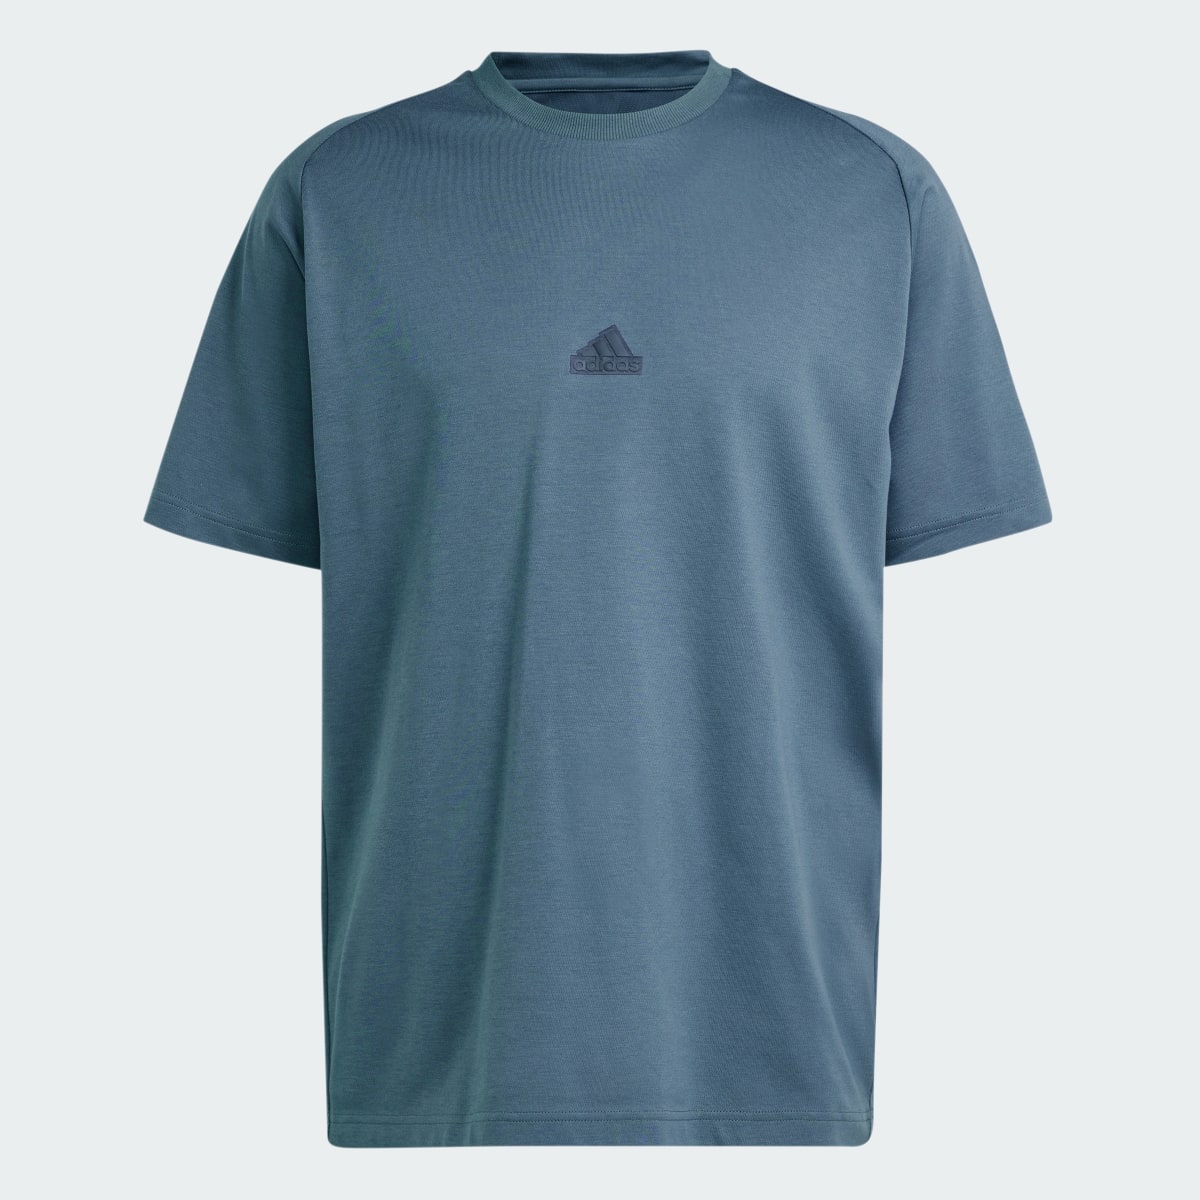 Adidas Z.N.E. T-Shirt. 5